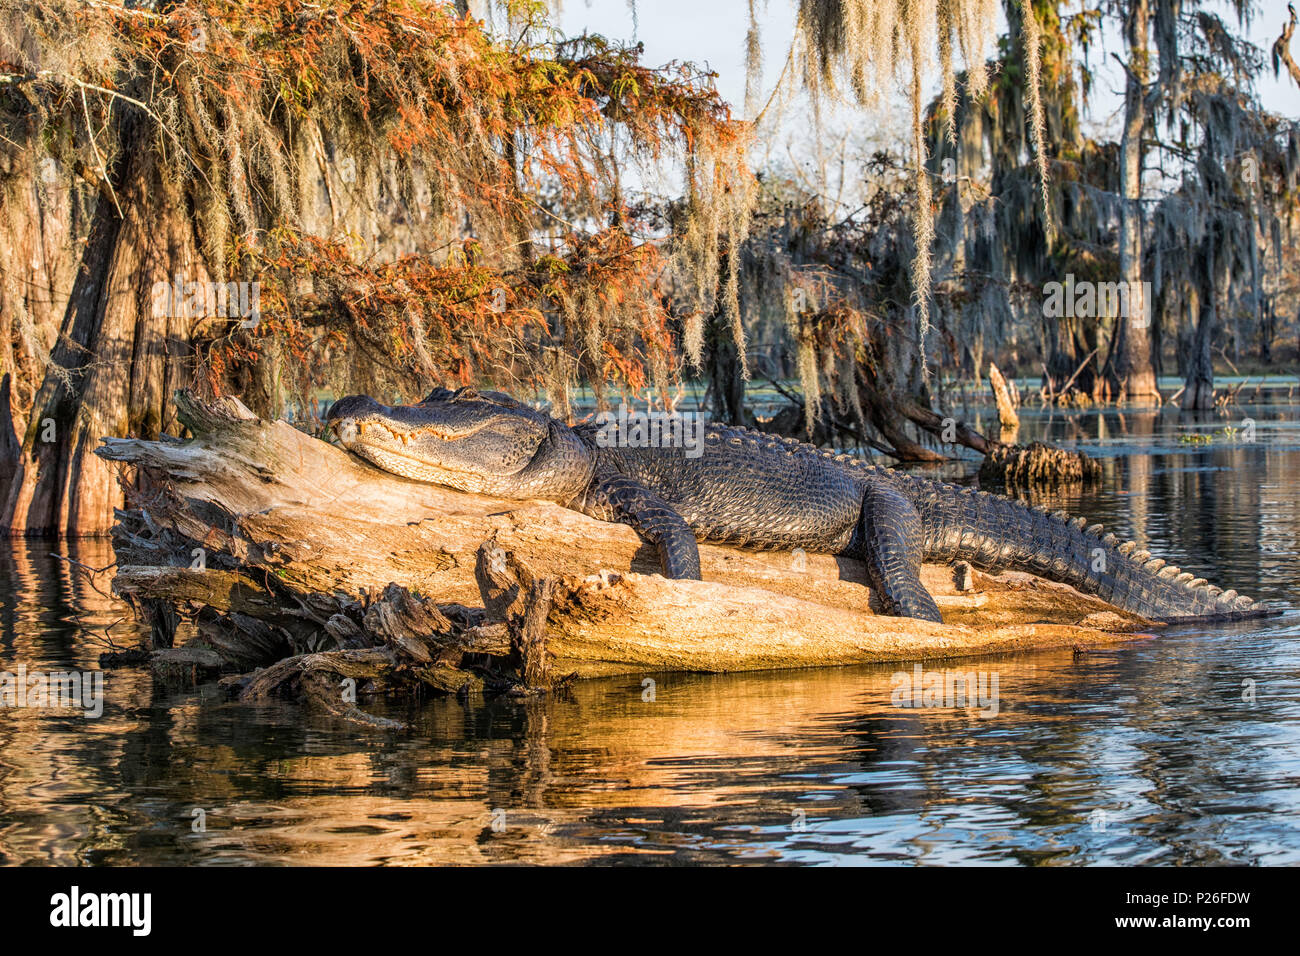 American alligator (Alligator mississippiensis), See Martin, Breaux Bridge, Atchafalaya Becken, im Süden der USA, USA, Nordamerika Stockfoto